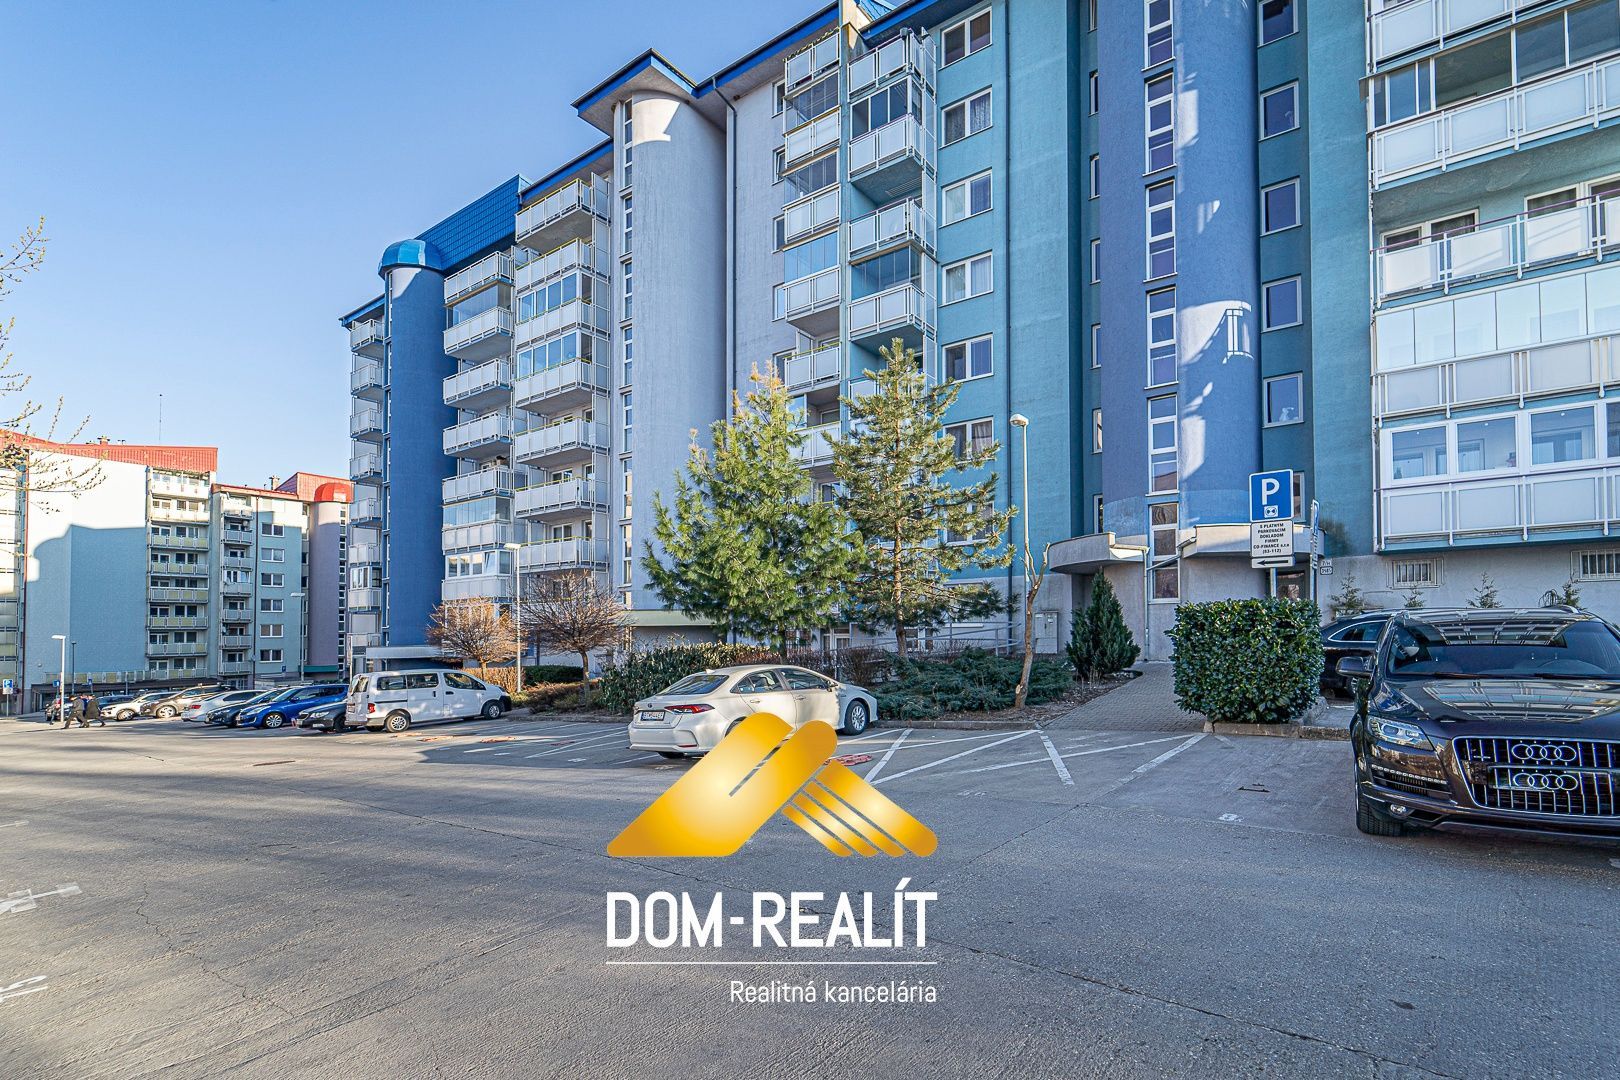 Nehnutelnost DOM-REALÍT ponúka 3 izbový byt v novostavbe v Dúbravke na ulici Agátová